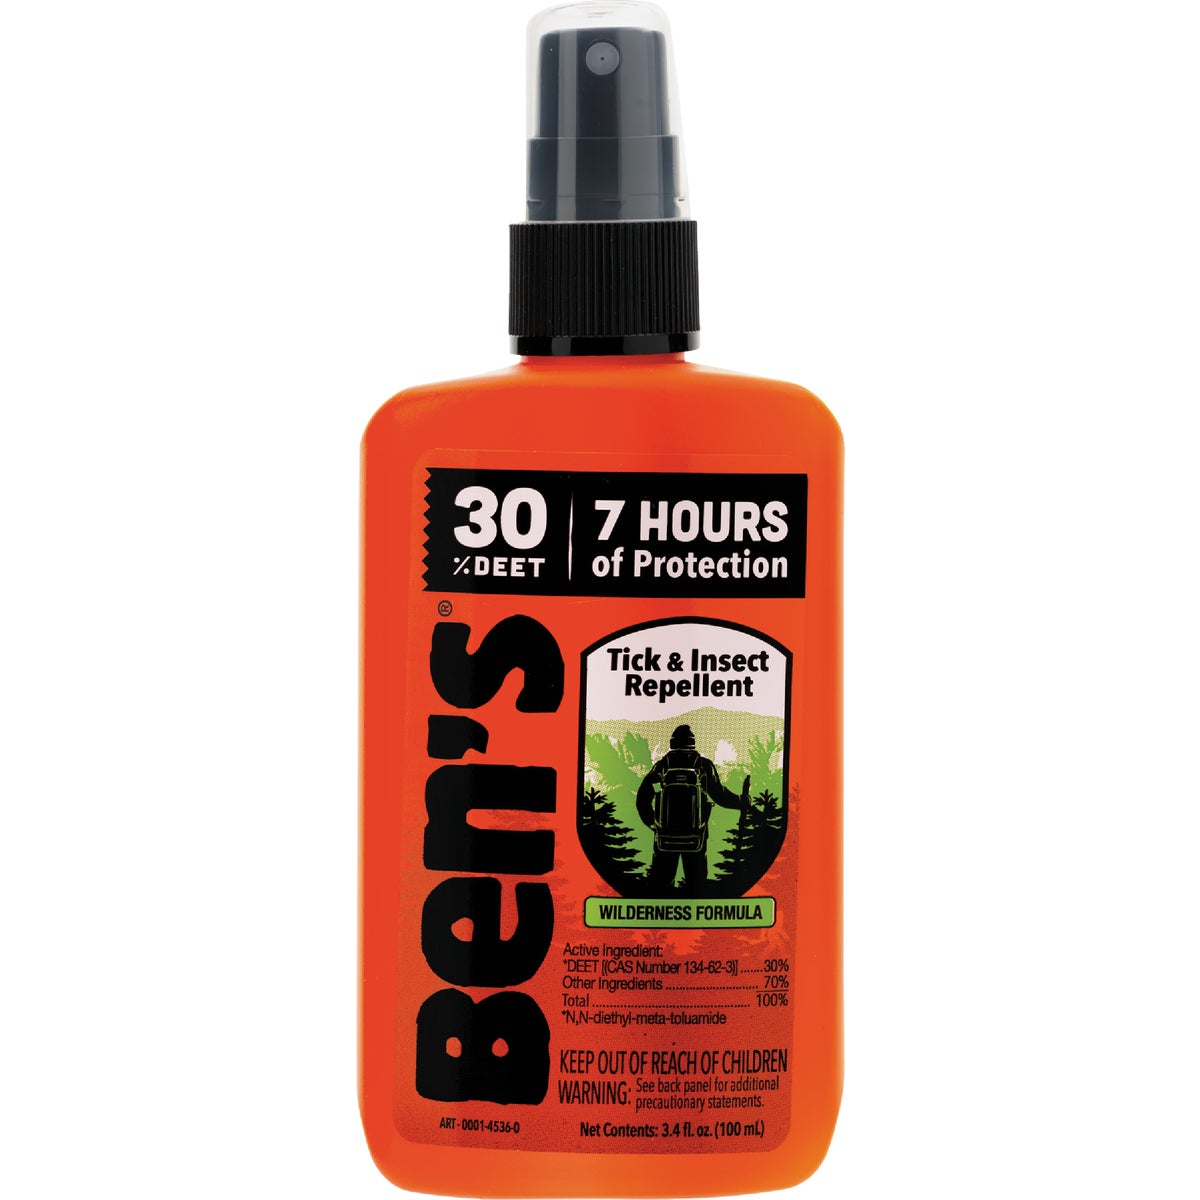 Ben's 30% Deet 3.4 Oz. Insect Repellent Pump Spray